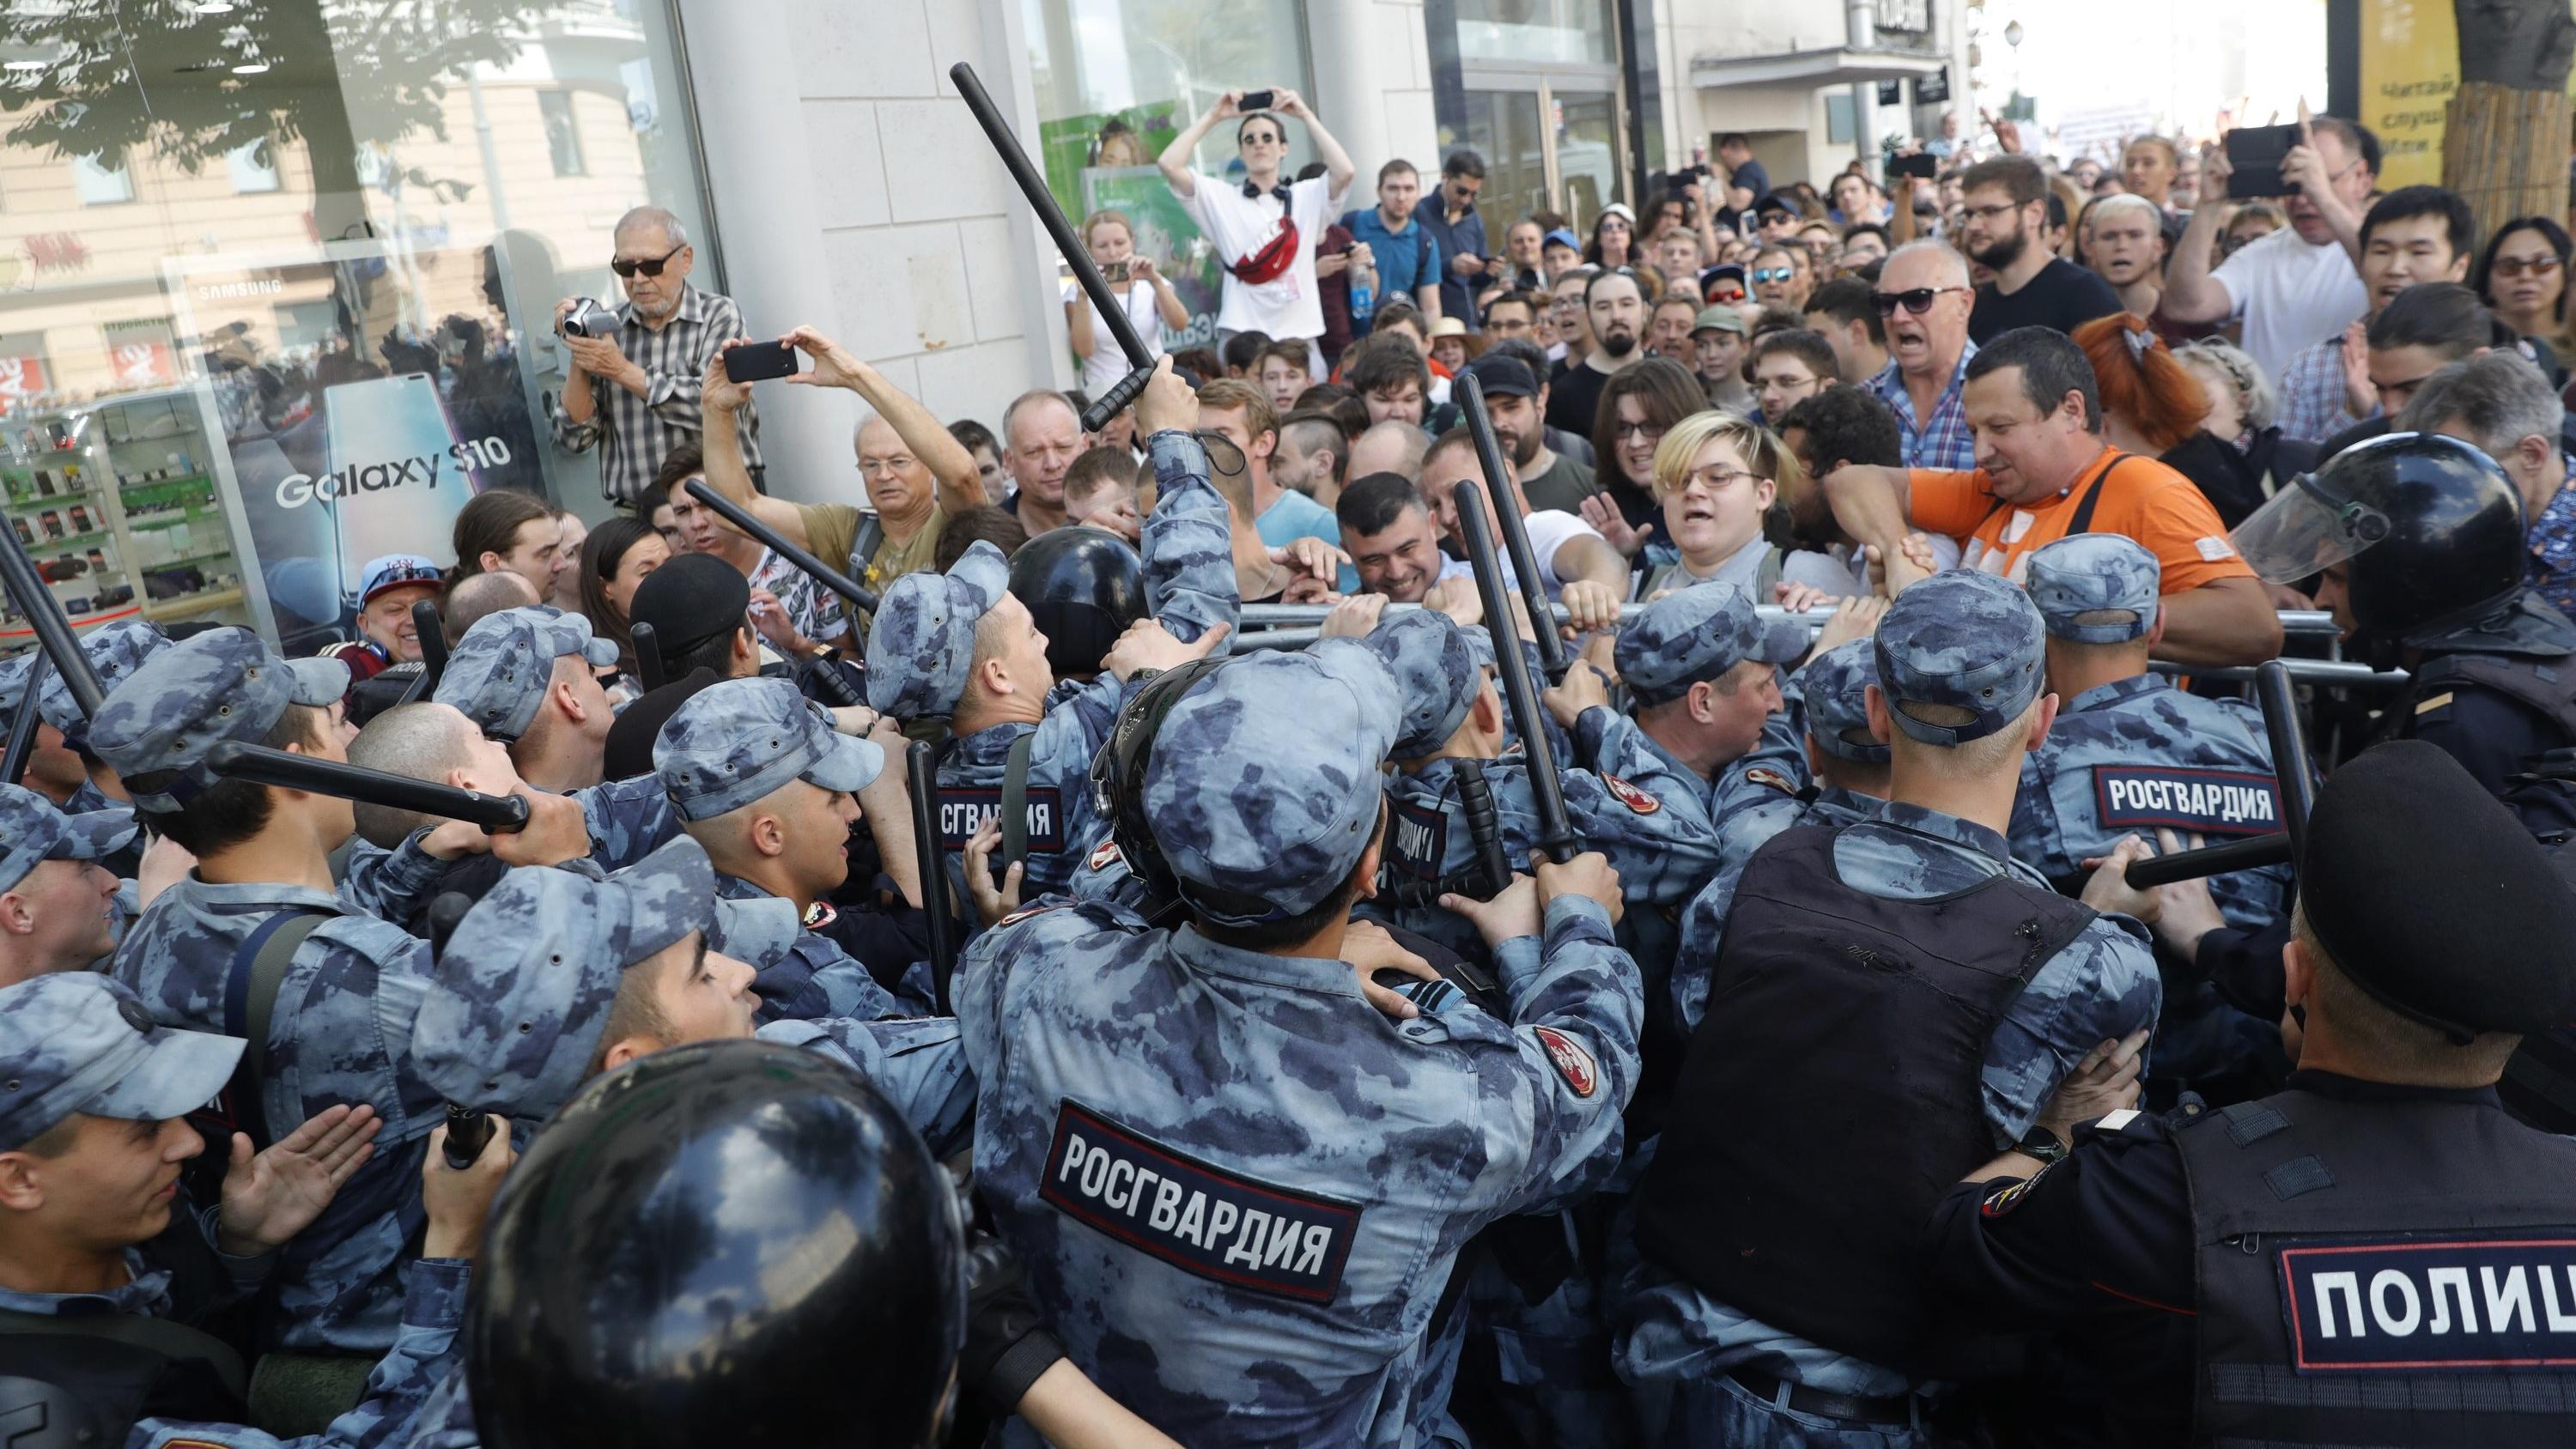 27.07.2019, Russland, Moskau: Demonstranten geraten mit der Polizei während einer nicht genehmigten Kundgebung im Zentrum von der Stadt aneinander. Begleitet von einem massiven Aufgebot der Polizei haben am Samstag in Moskau Hunderte Menschen gegen d